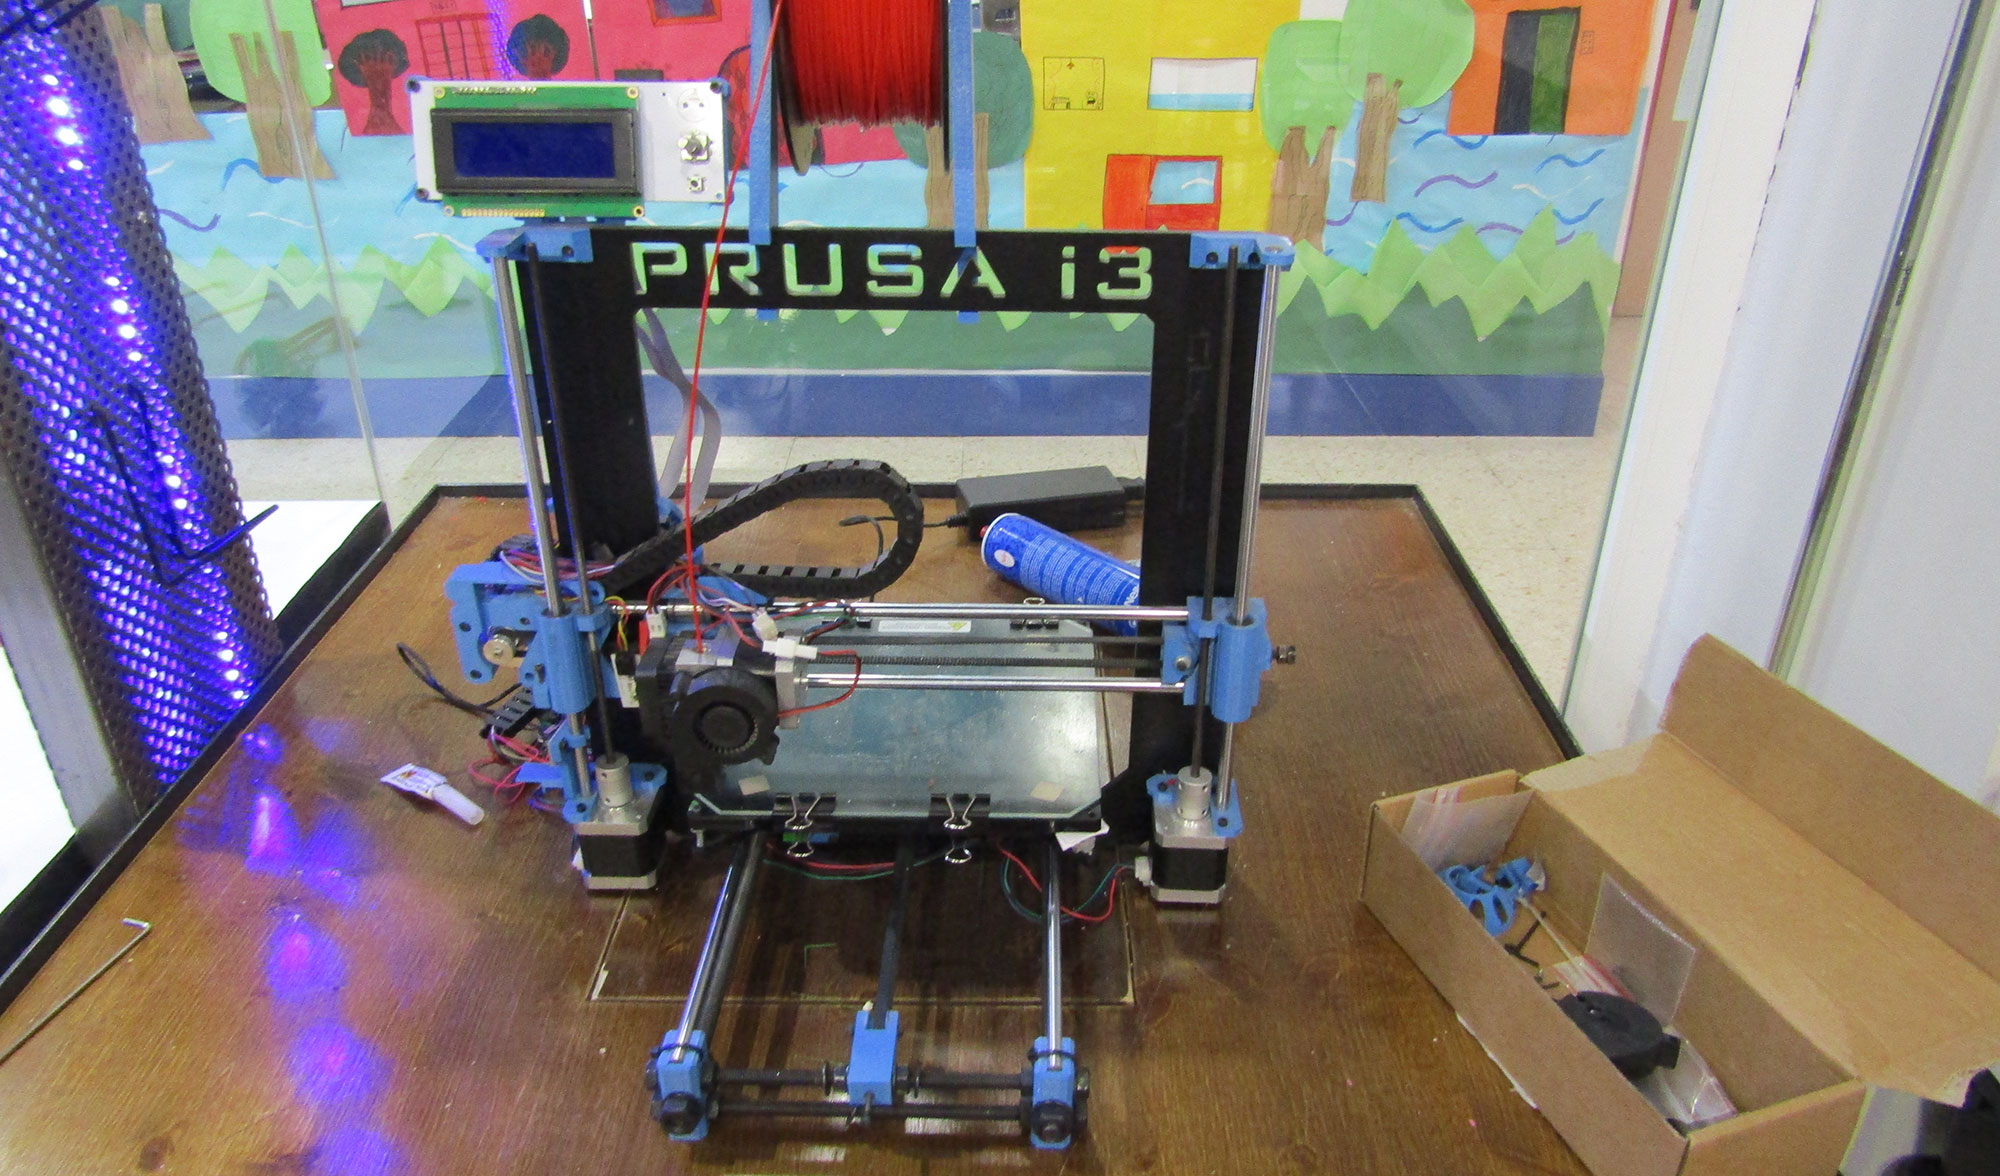 Una de las tecnologas que emplean en el aula de robtica es el diseo y la impresin 3D